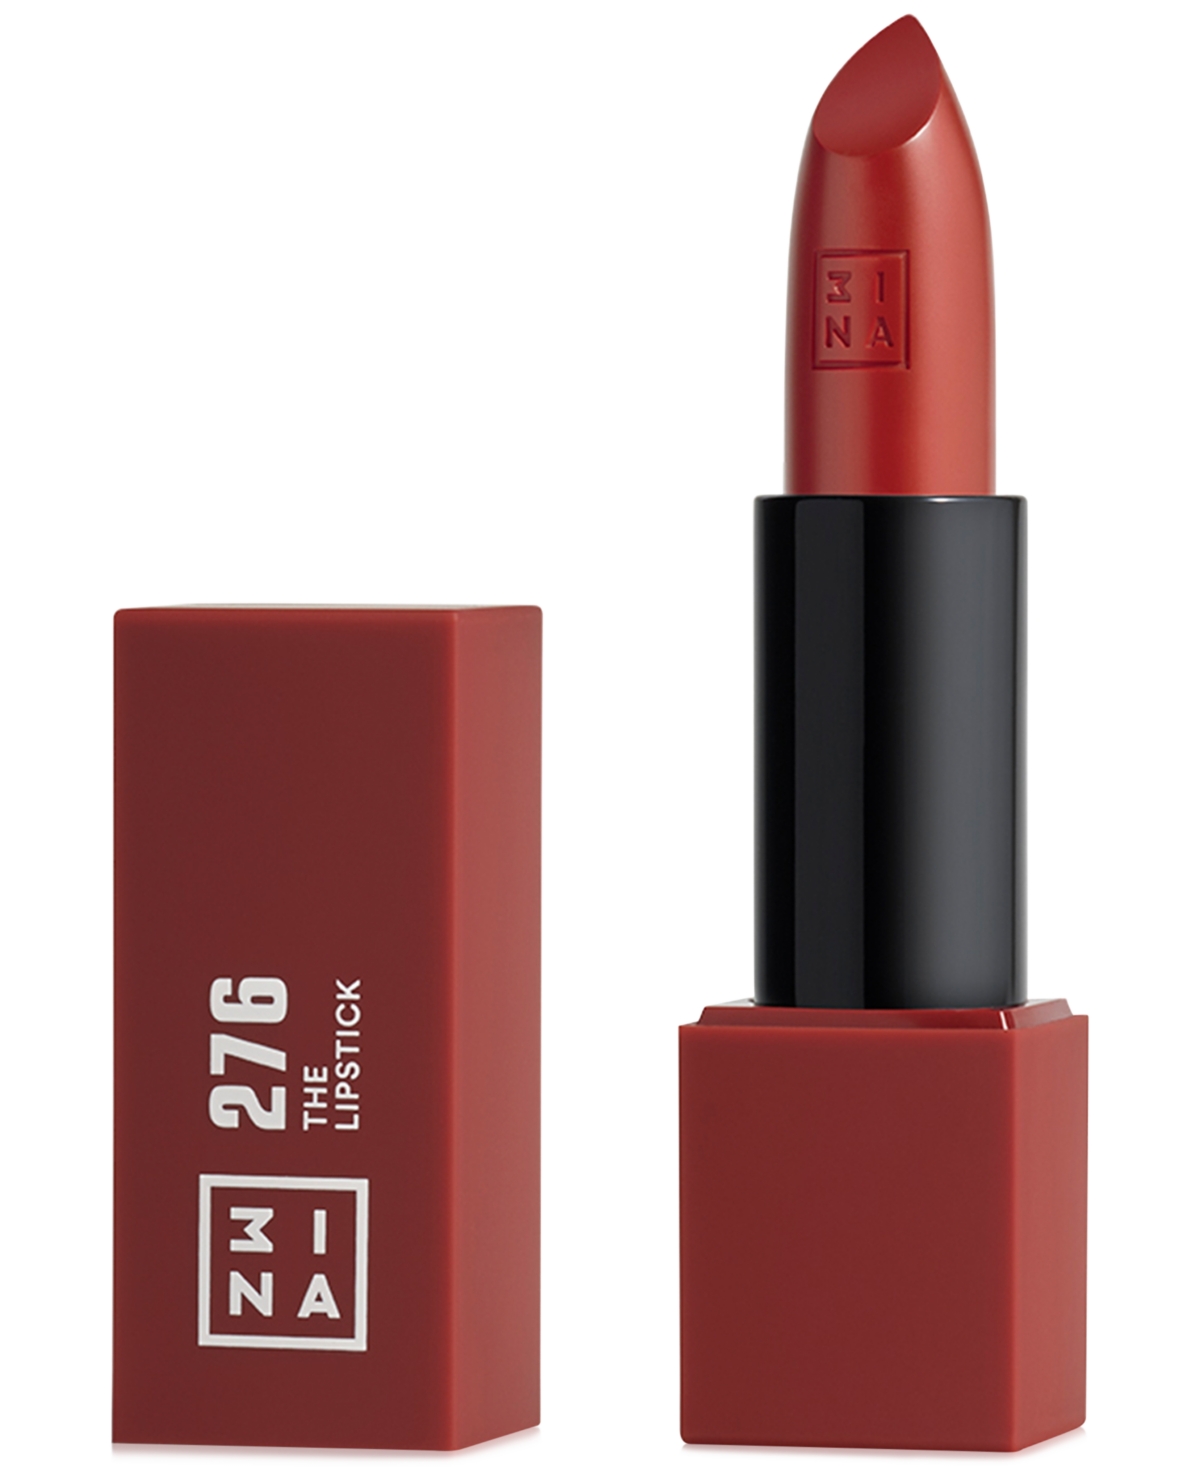 The Lipstick - Shiny - Shiny Maroon Brown